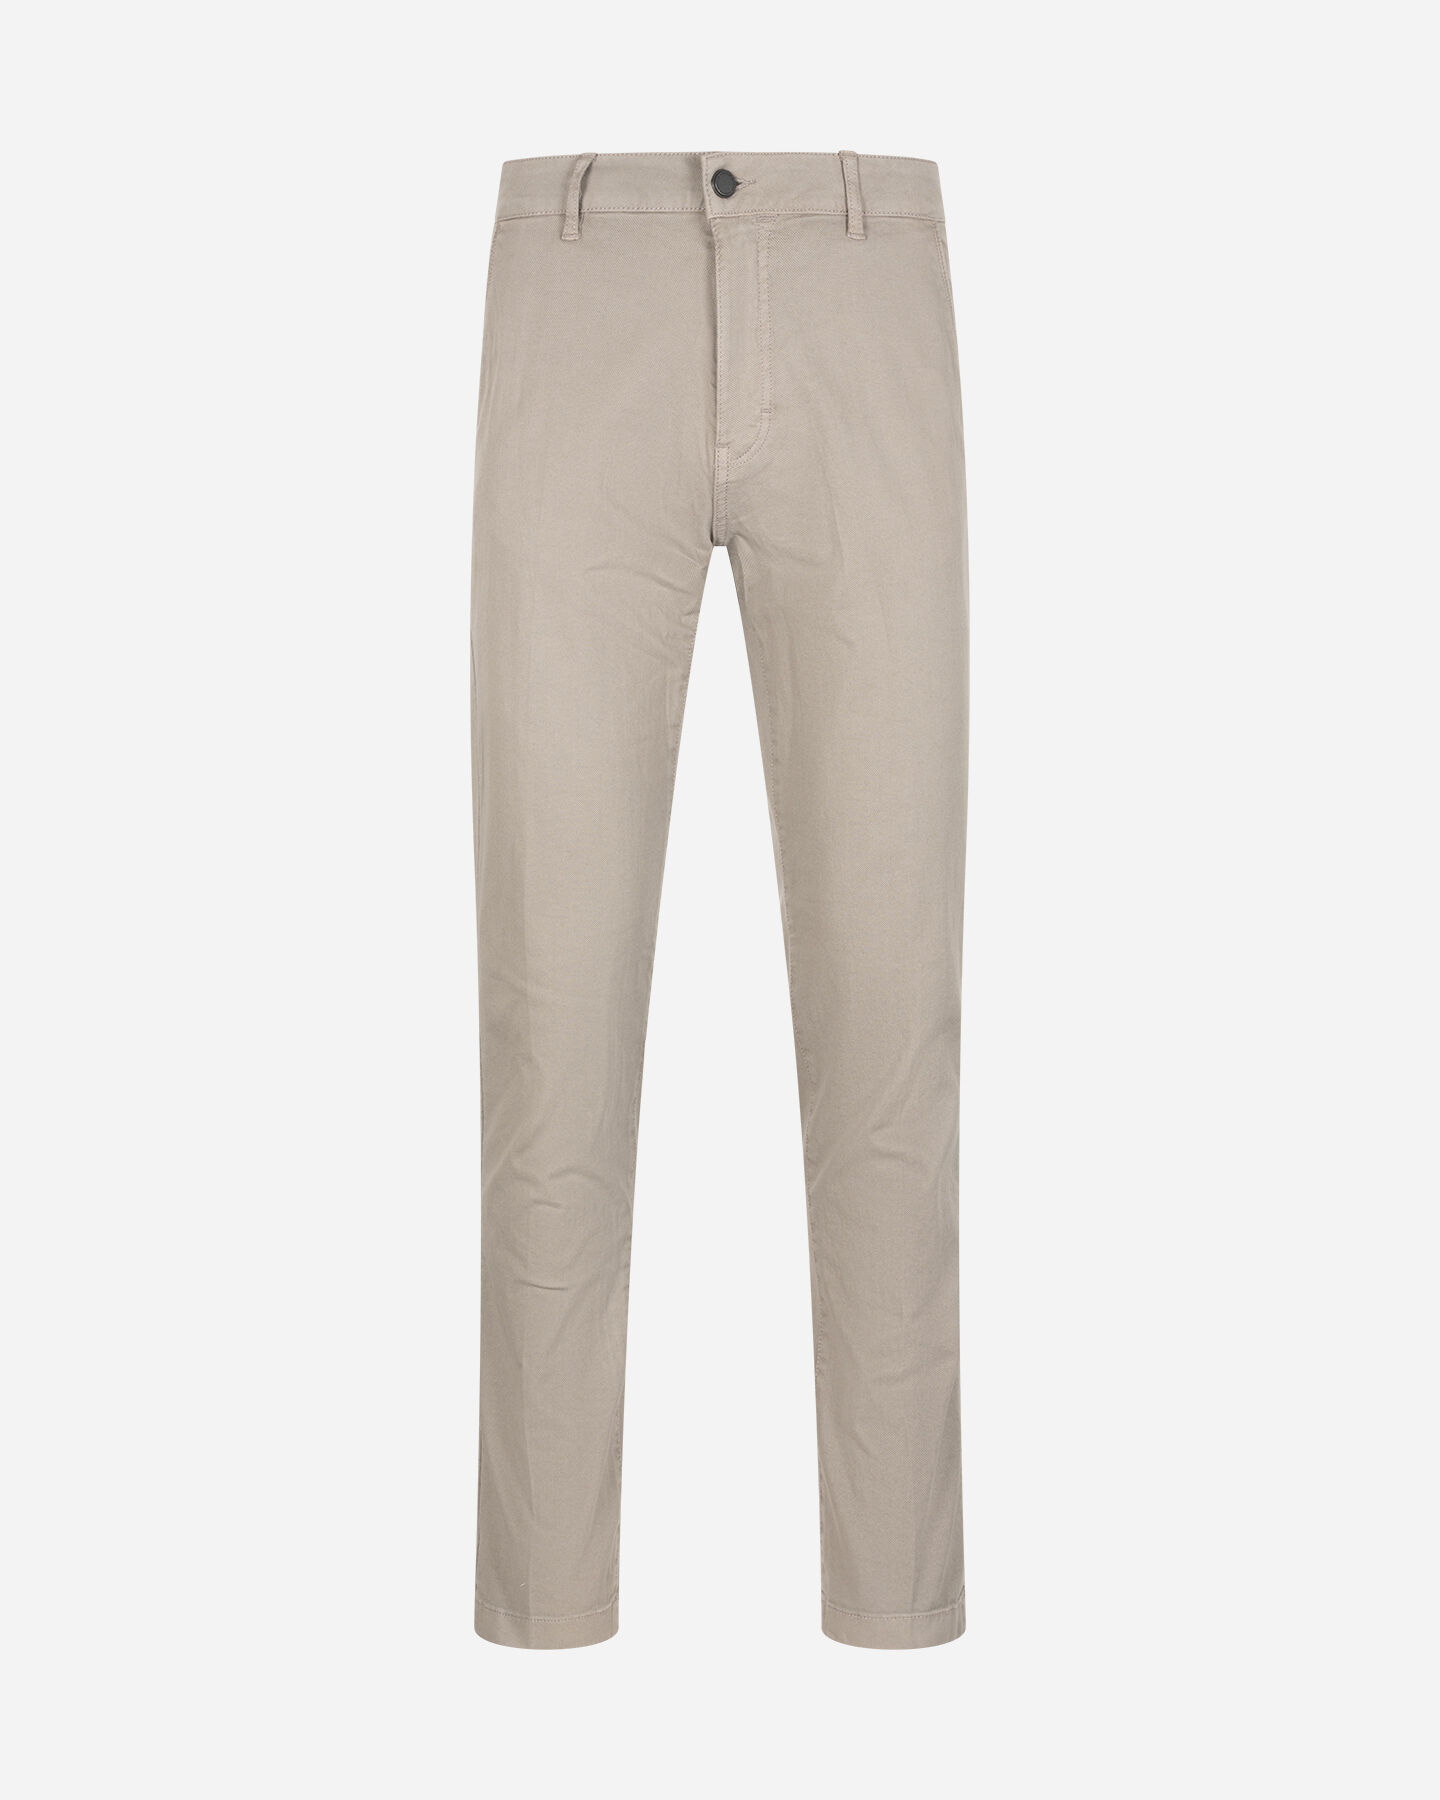  Pantalone BEST COMPANY COTTON LINE M S4131673|011|46 scatto 0